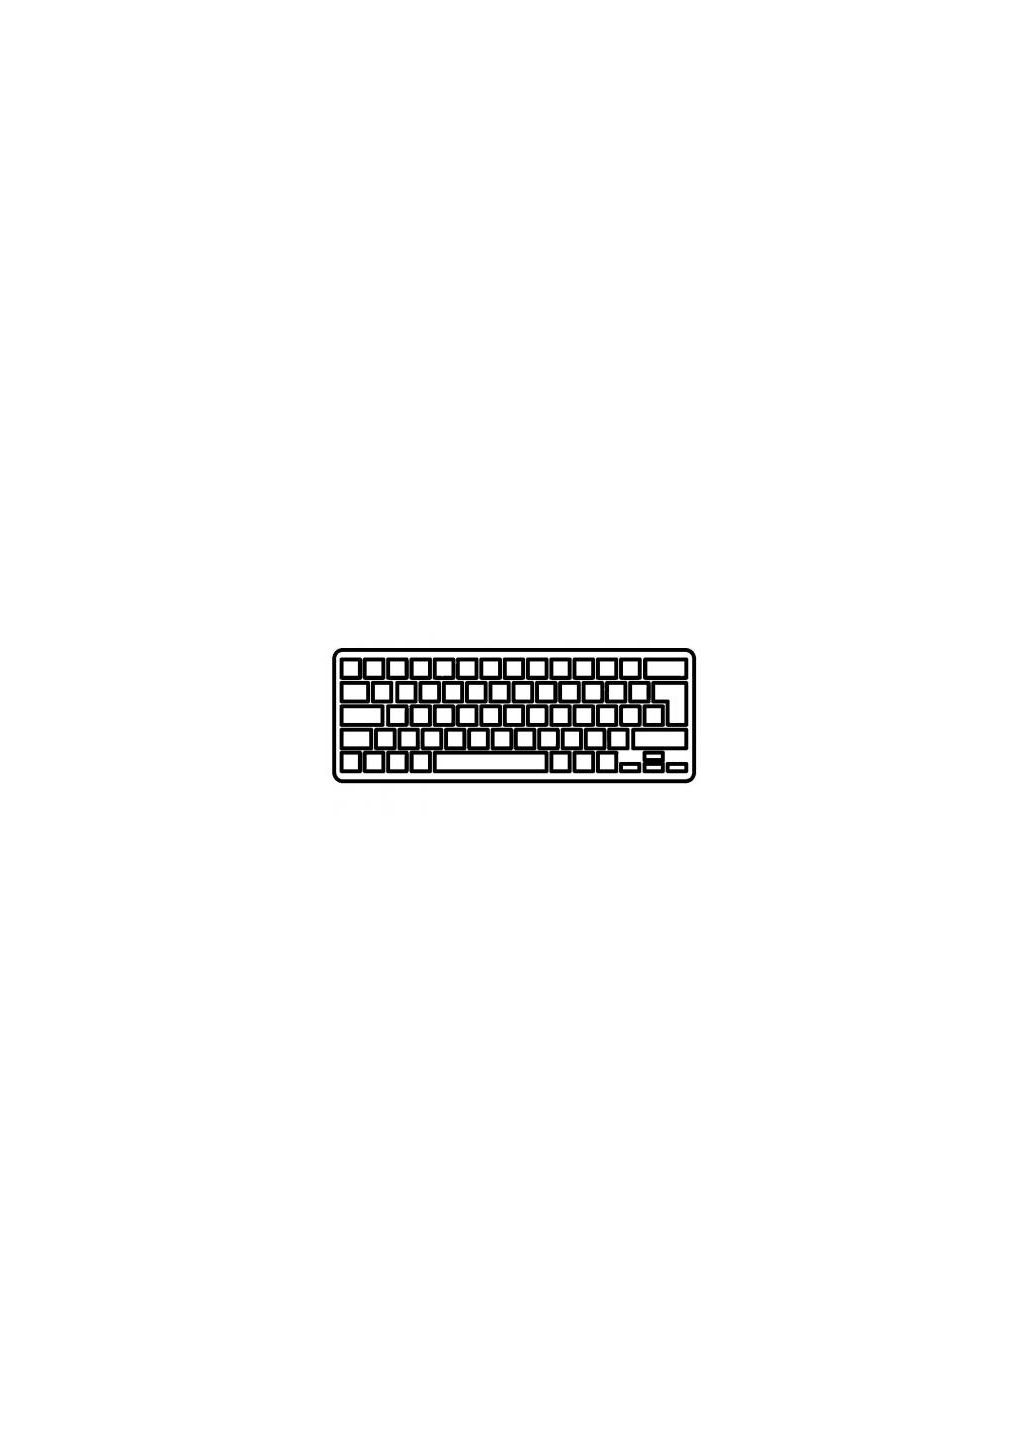 Клавиатура ноутбука Pavilion dm41000/dv5-2000 белая UA (A43396) HP pavilion dm4-1000/dv5-2000 белая ua (276706632)